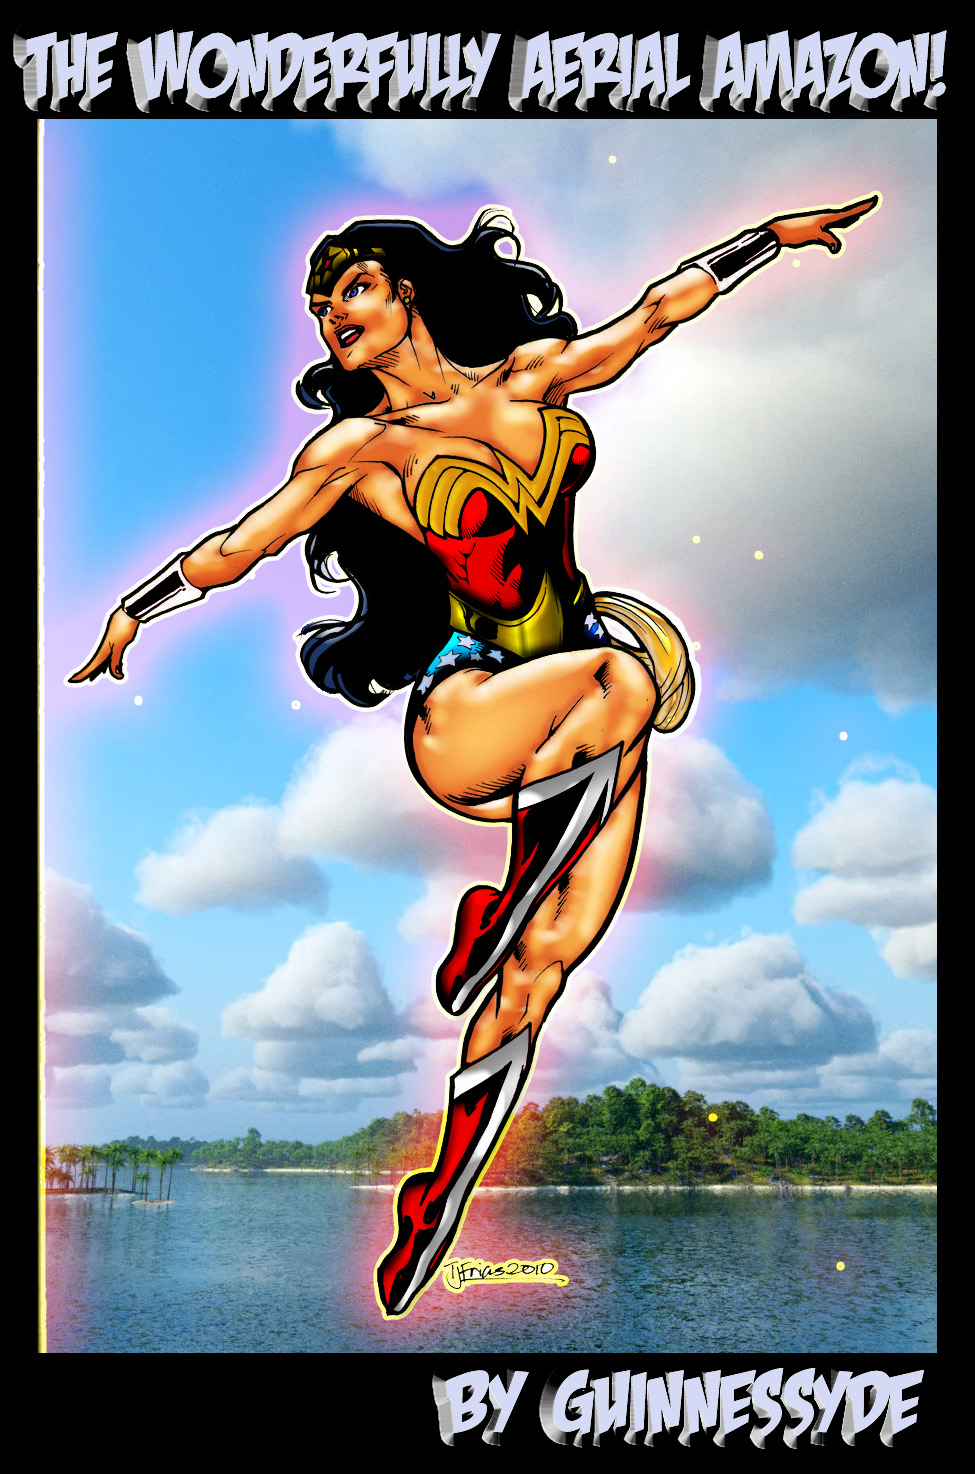 Wonder Woman in flight by Guinnessyde RELOADED!